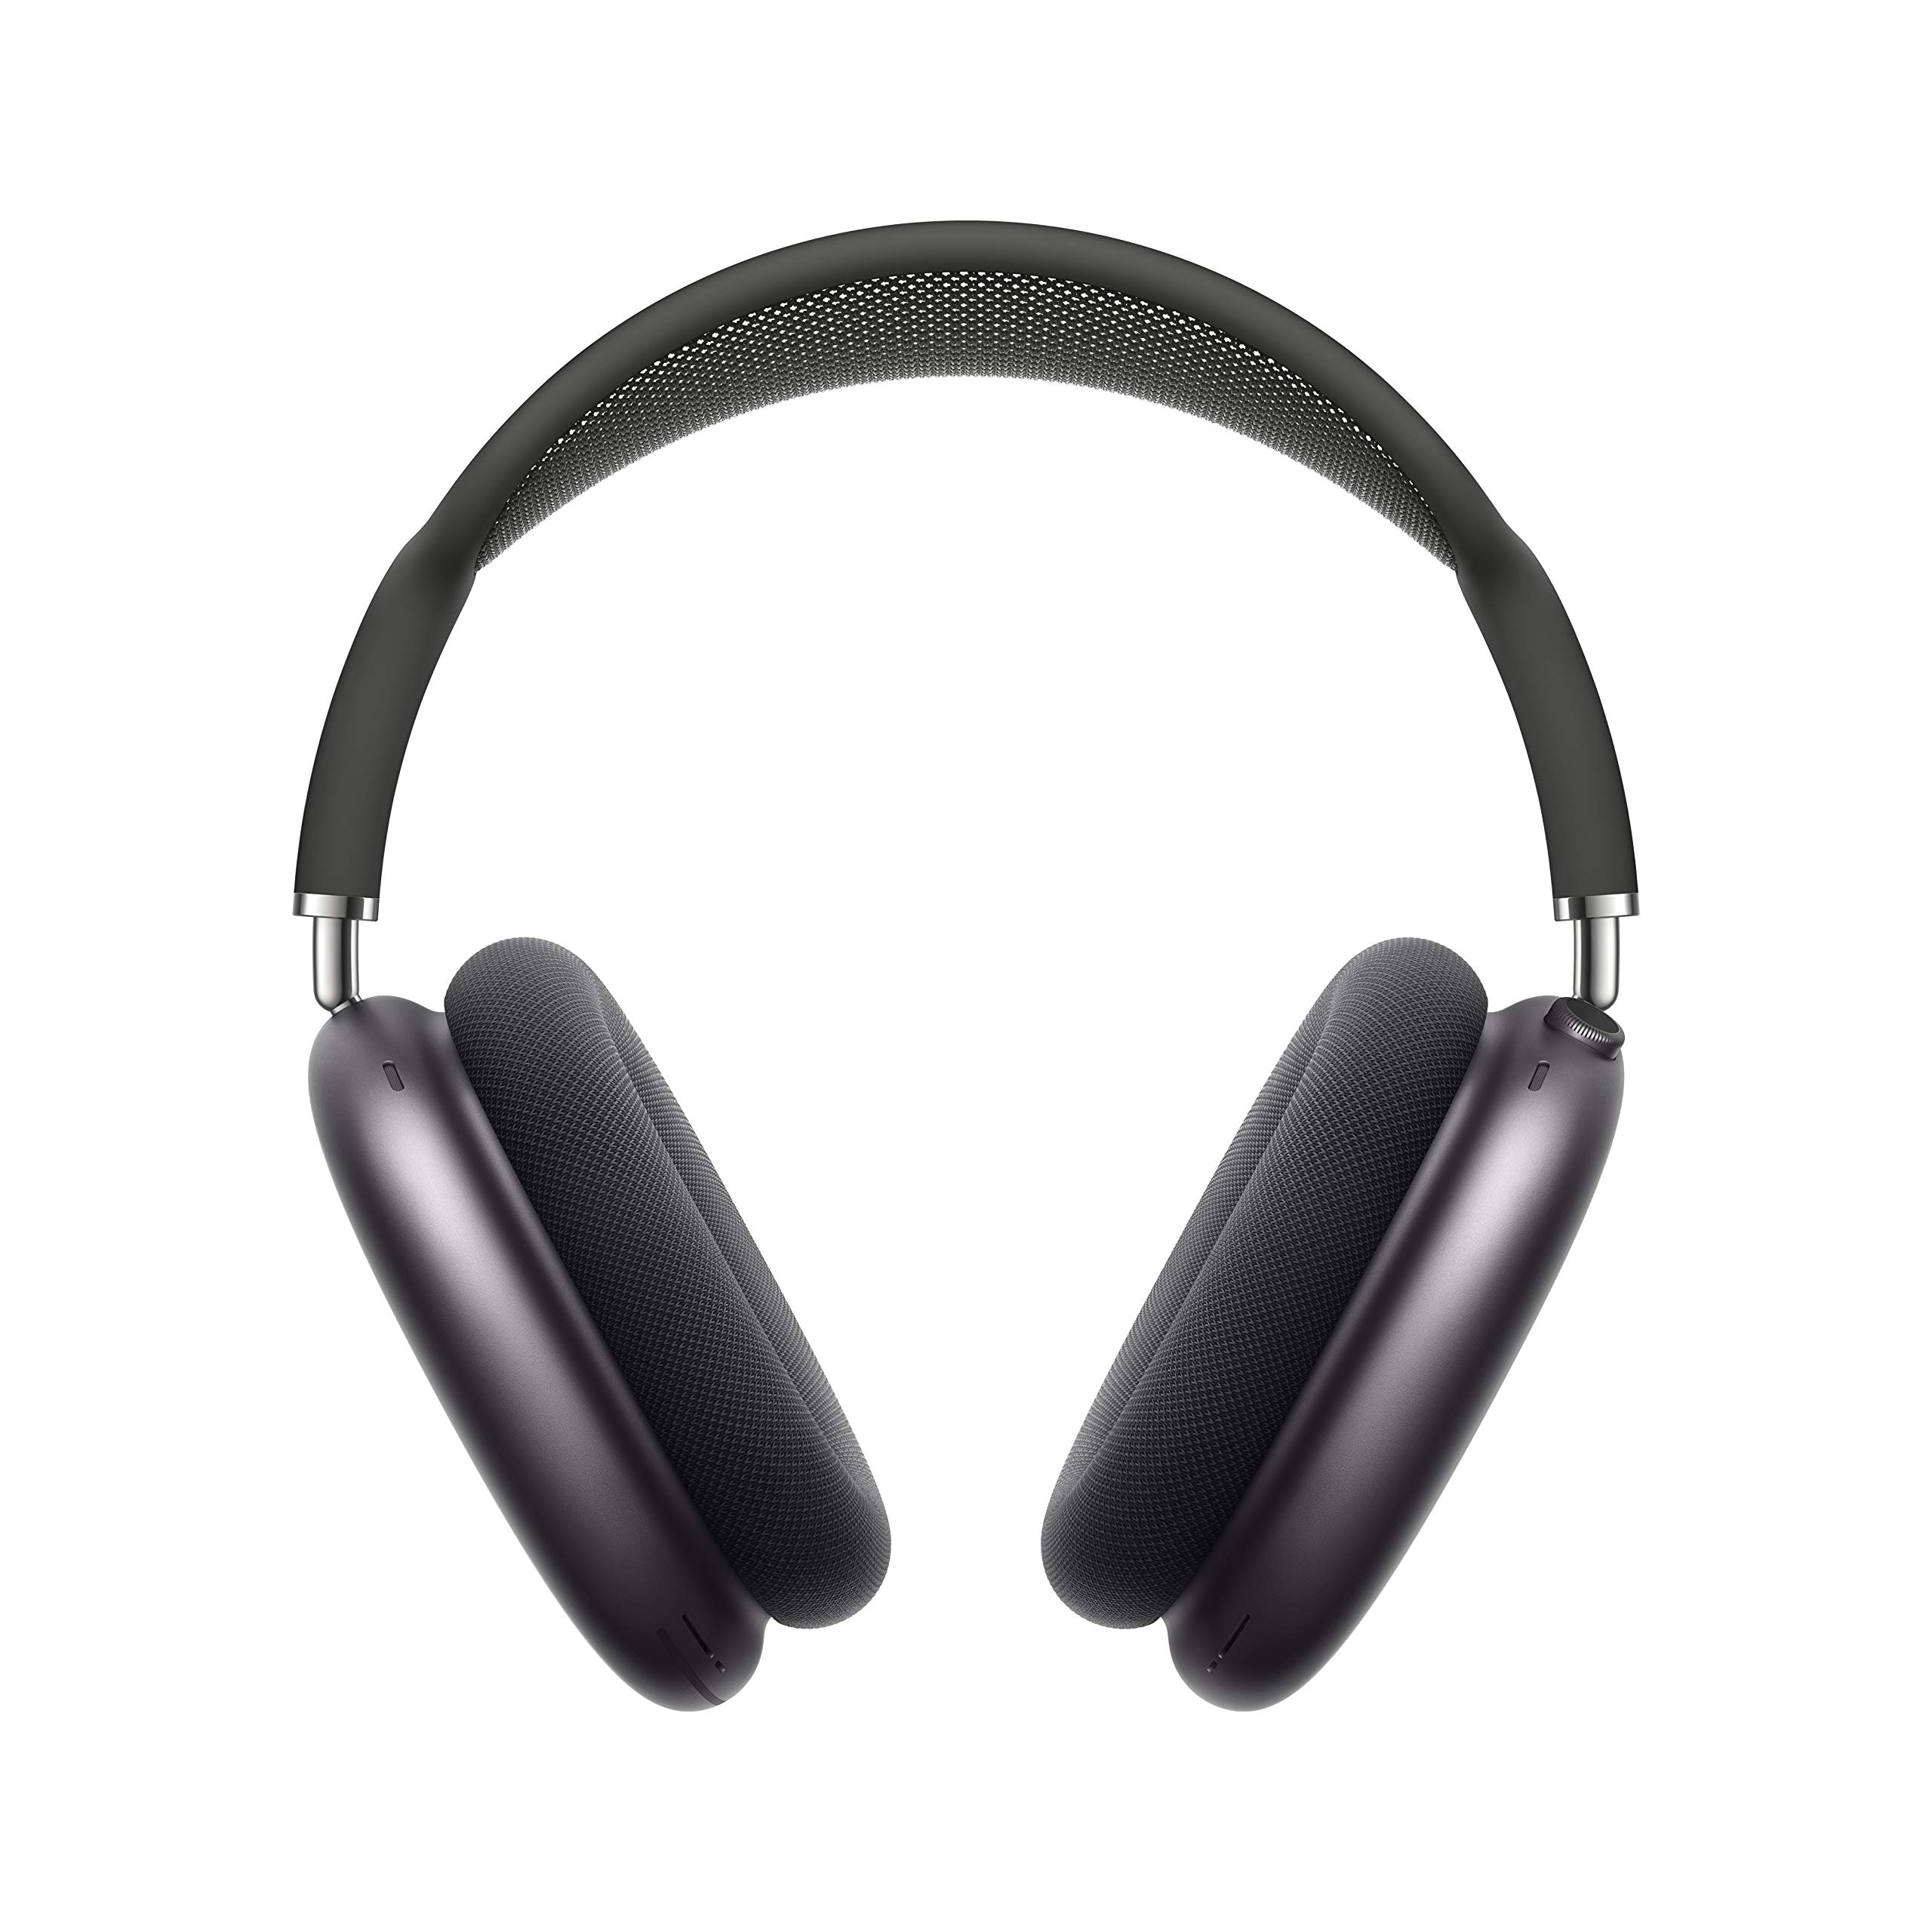 Apple AirPods Max 无线耳罩式耳机。主动降噪、透明模式、空间音频、用于音量控制的数字表冠。 iPhone 蓝牙耳机 - 深空灰色